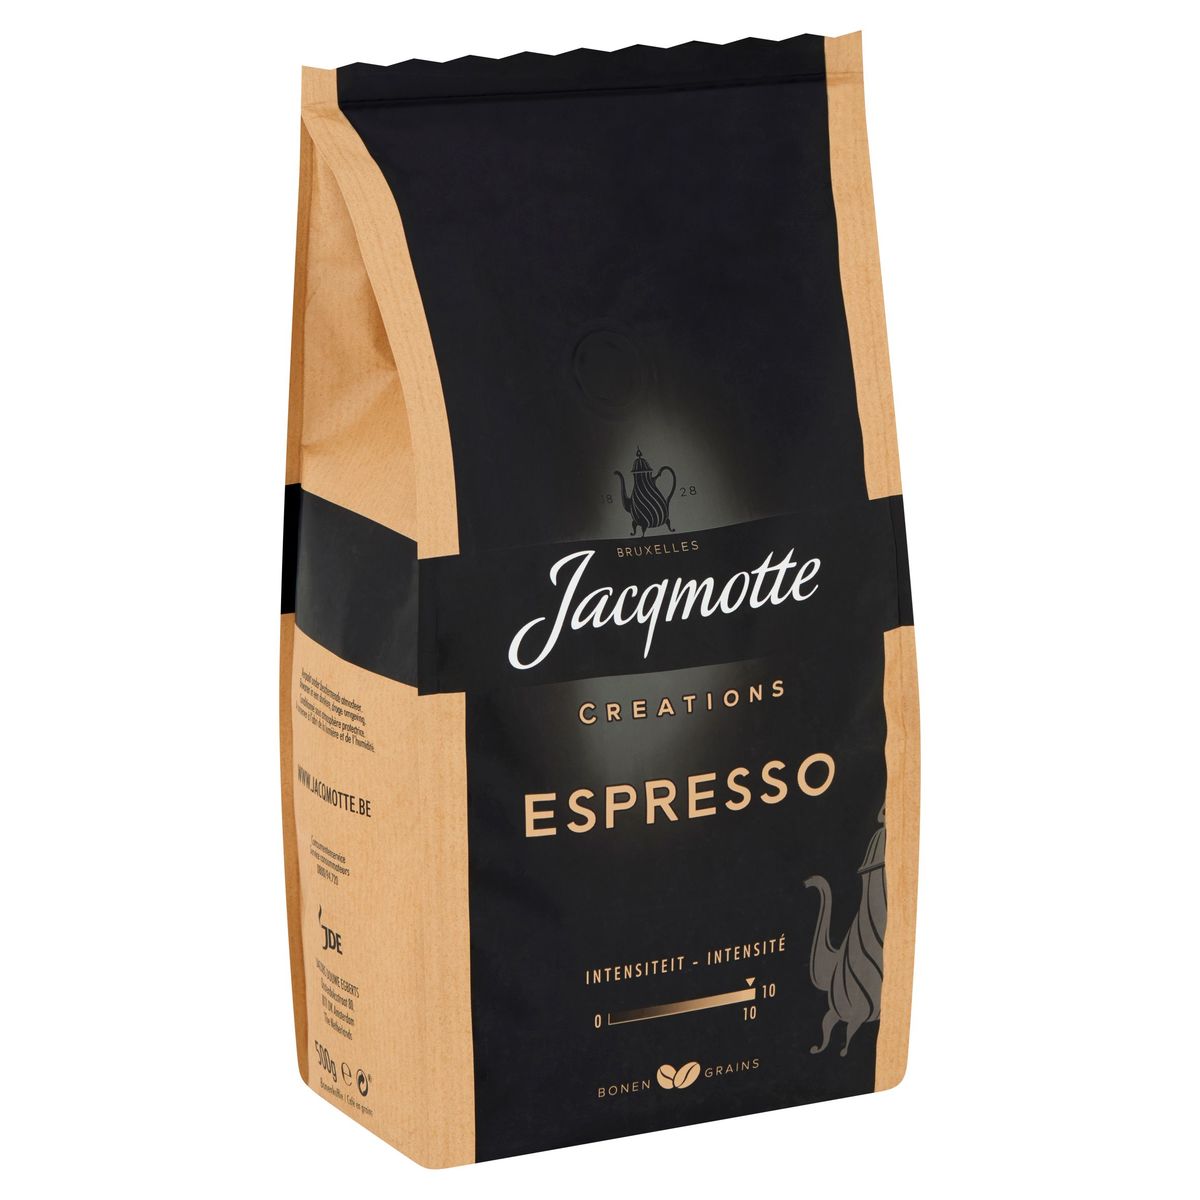 Jacqmotte Café Grain Espresso 500g